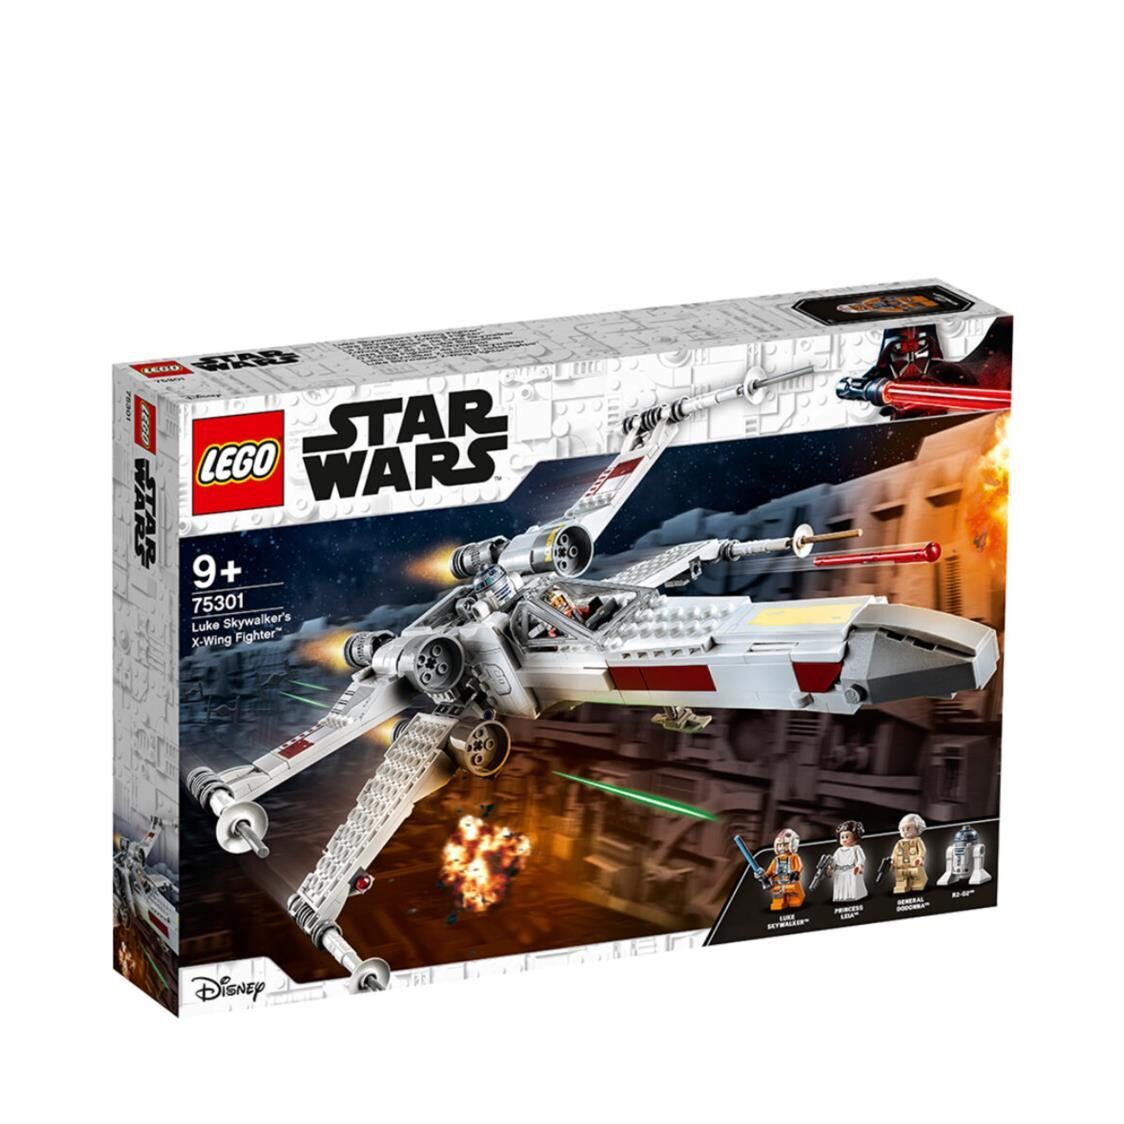 LEGO Star Wars - Luke Skywalkers X-Wing Fighter 75301